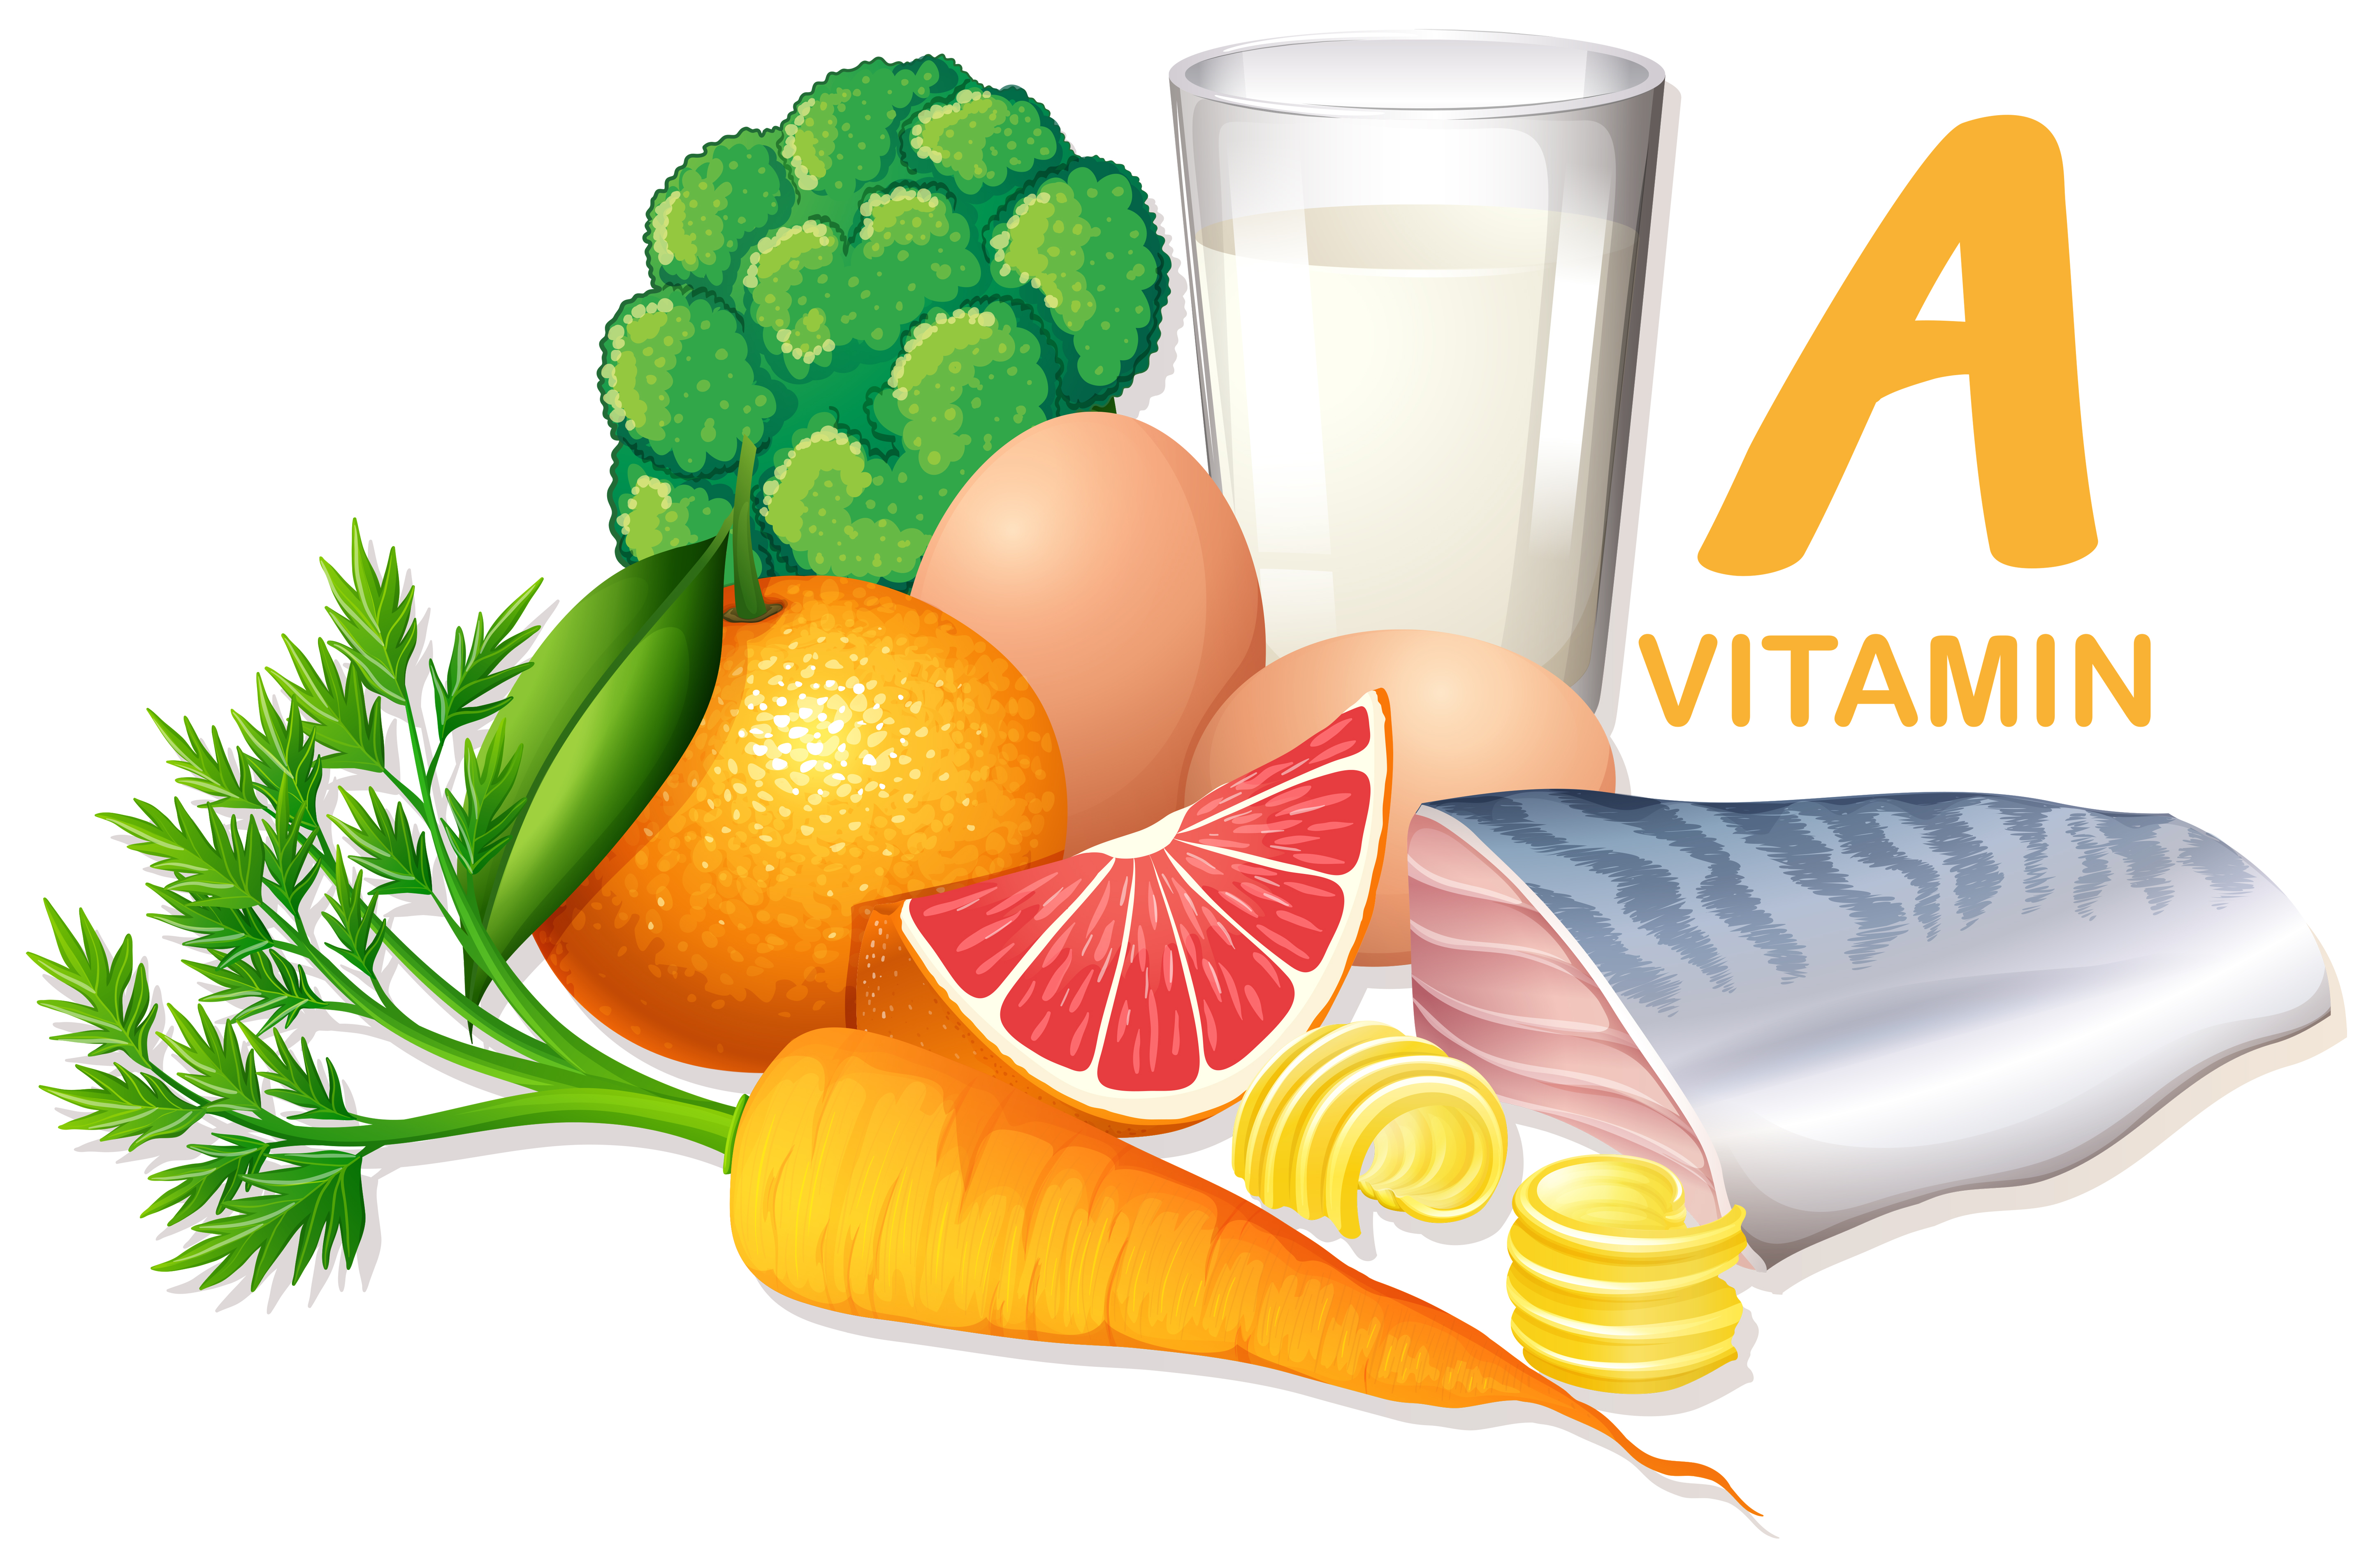 Картинки продуктов с витамином с. Что такое витамины. Витамины без фона. Витамины для детей. О витаминах детям дошкольникам.